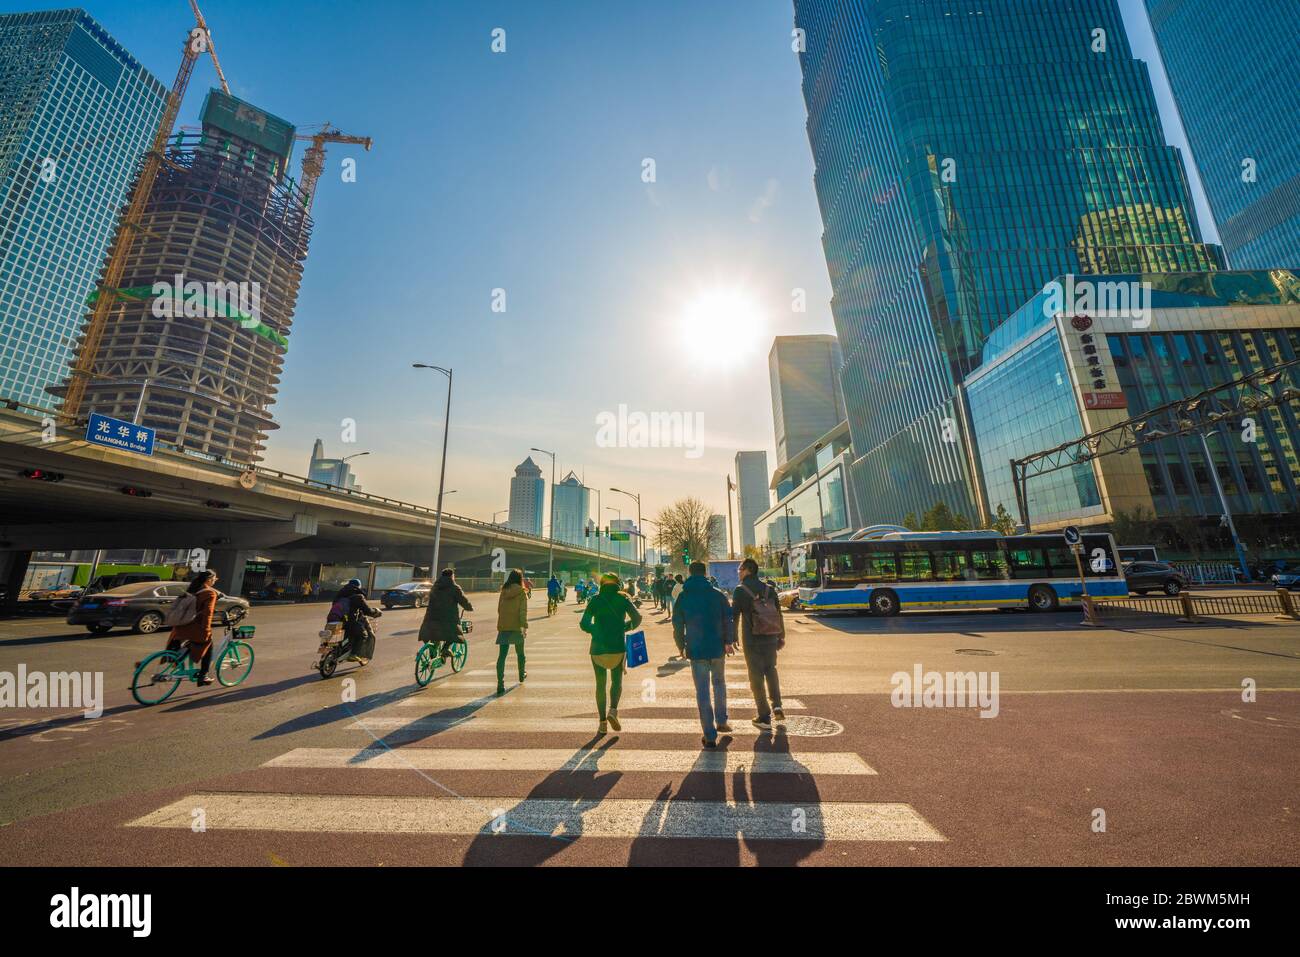 PEKING, CHINA - NOVEMBER 26: Blick auf Menschen, die am 26. November 2019 in Peking auf einer Straße im zentralen Geschäftsviertel Pekings die Straße überqueren Stockfoto